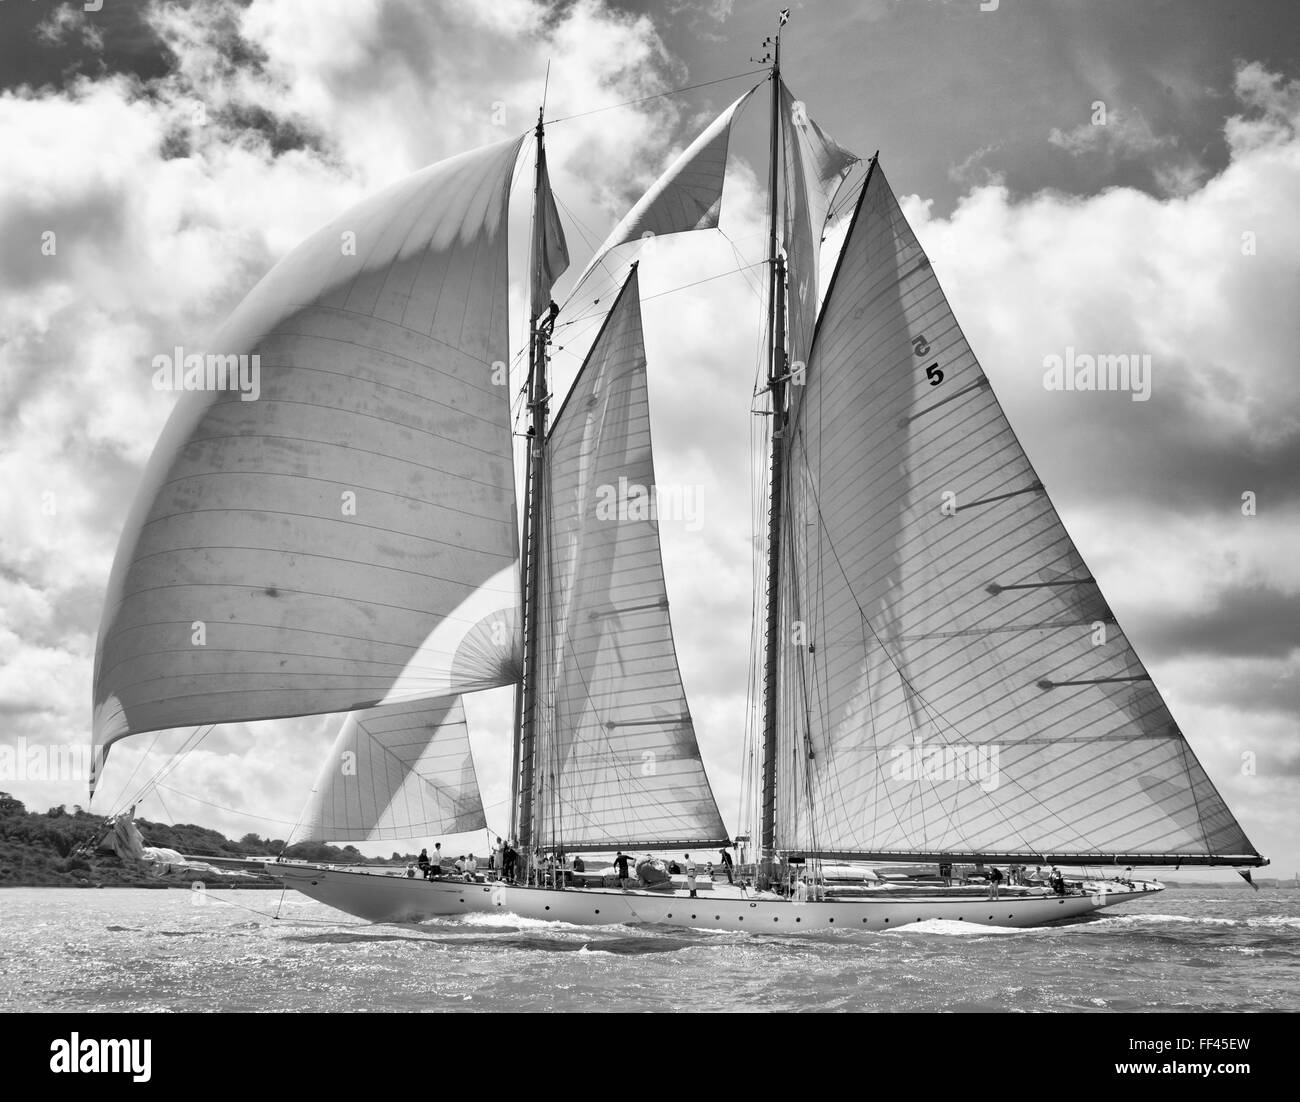 Schooner Eleonora - Classic yachts racing in The Solent Stock Photo